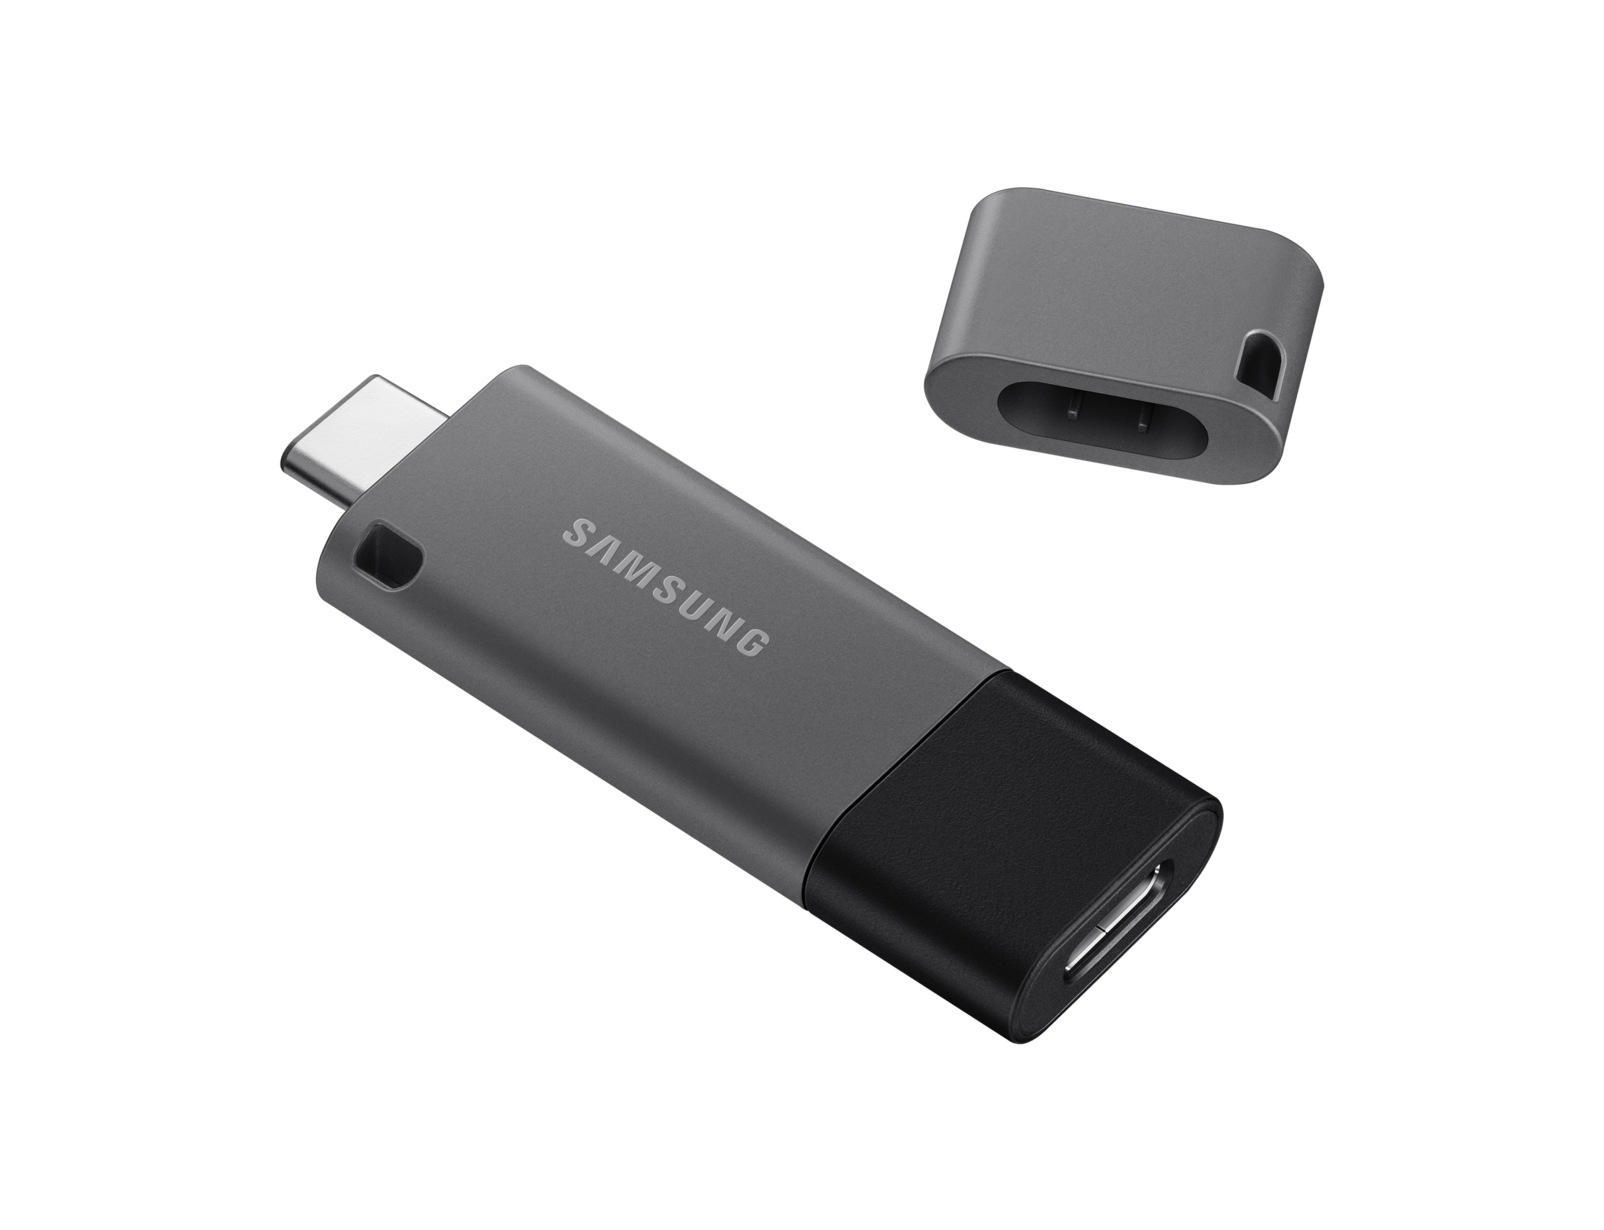 SAMSUNG Duo Schwarz GB, USB-Stick, 256 400 Plus MB/s